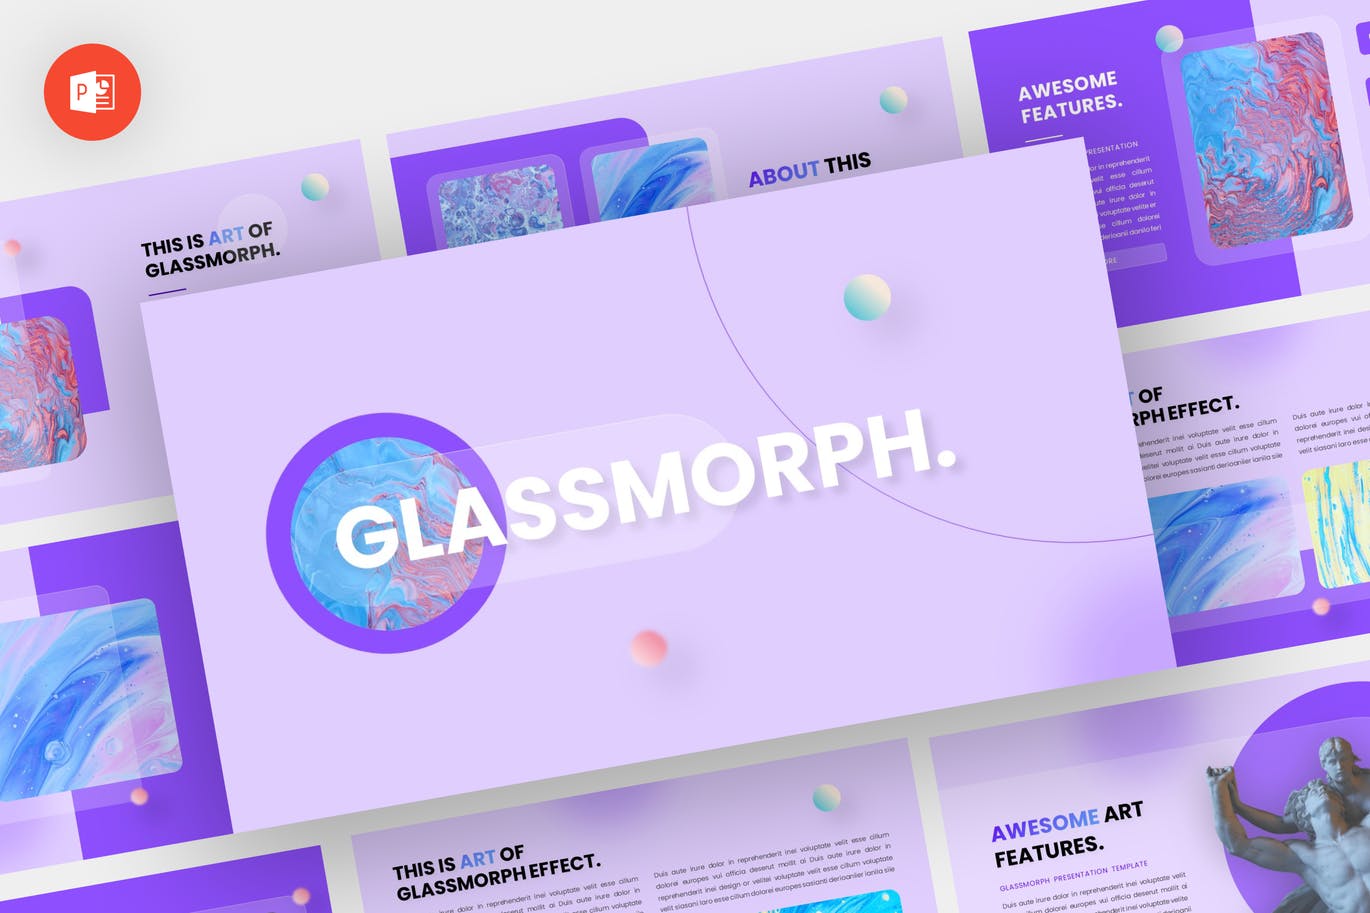 玻璃形态艺术作品集PPT演示文稿 Glassmorph – Glassmorph Powerpoint Template 幻灯图表 第1张